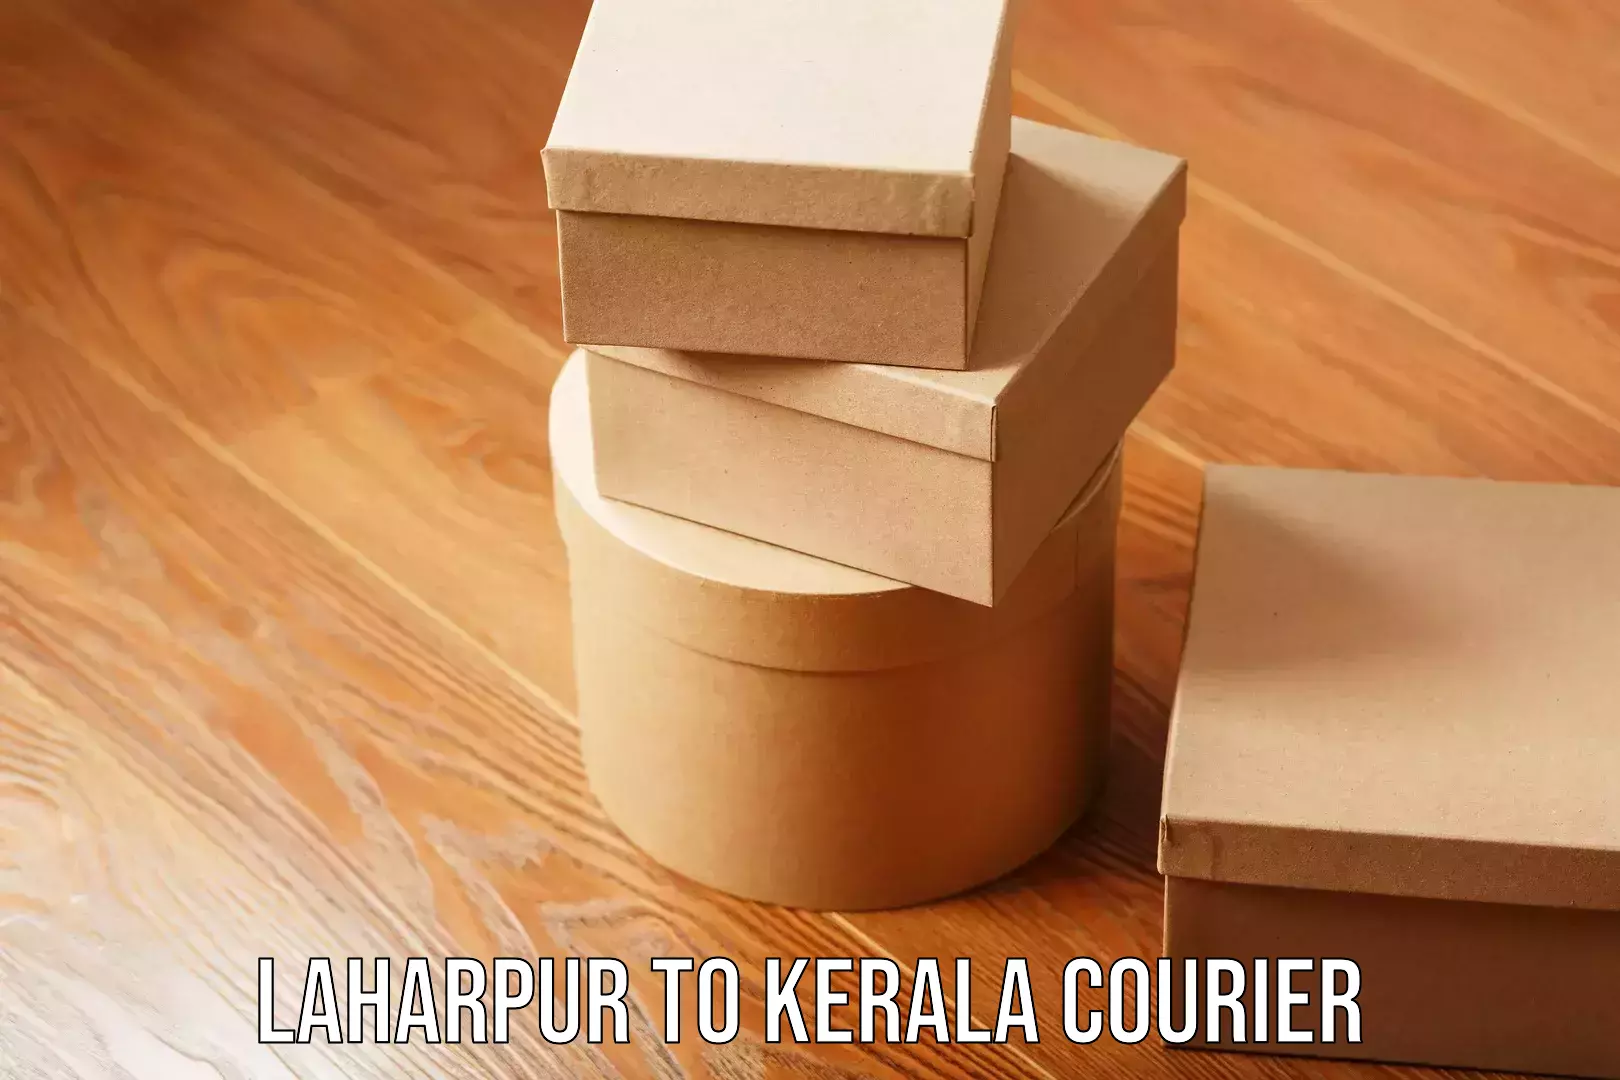 Home goods movers Laharpur to Kerala